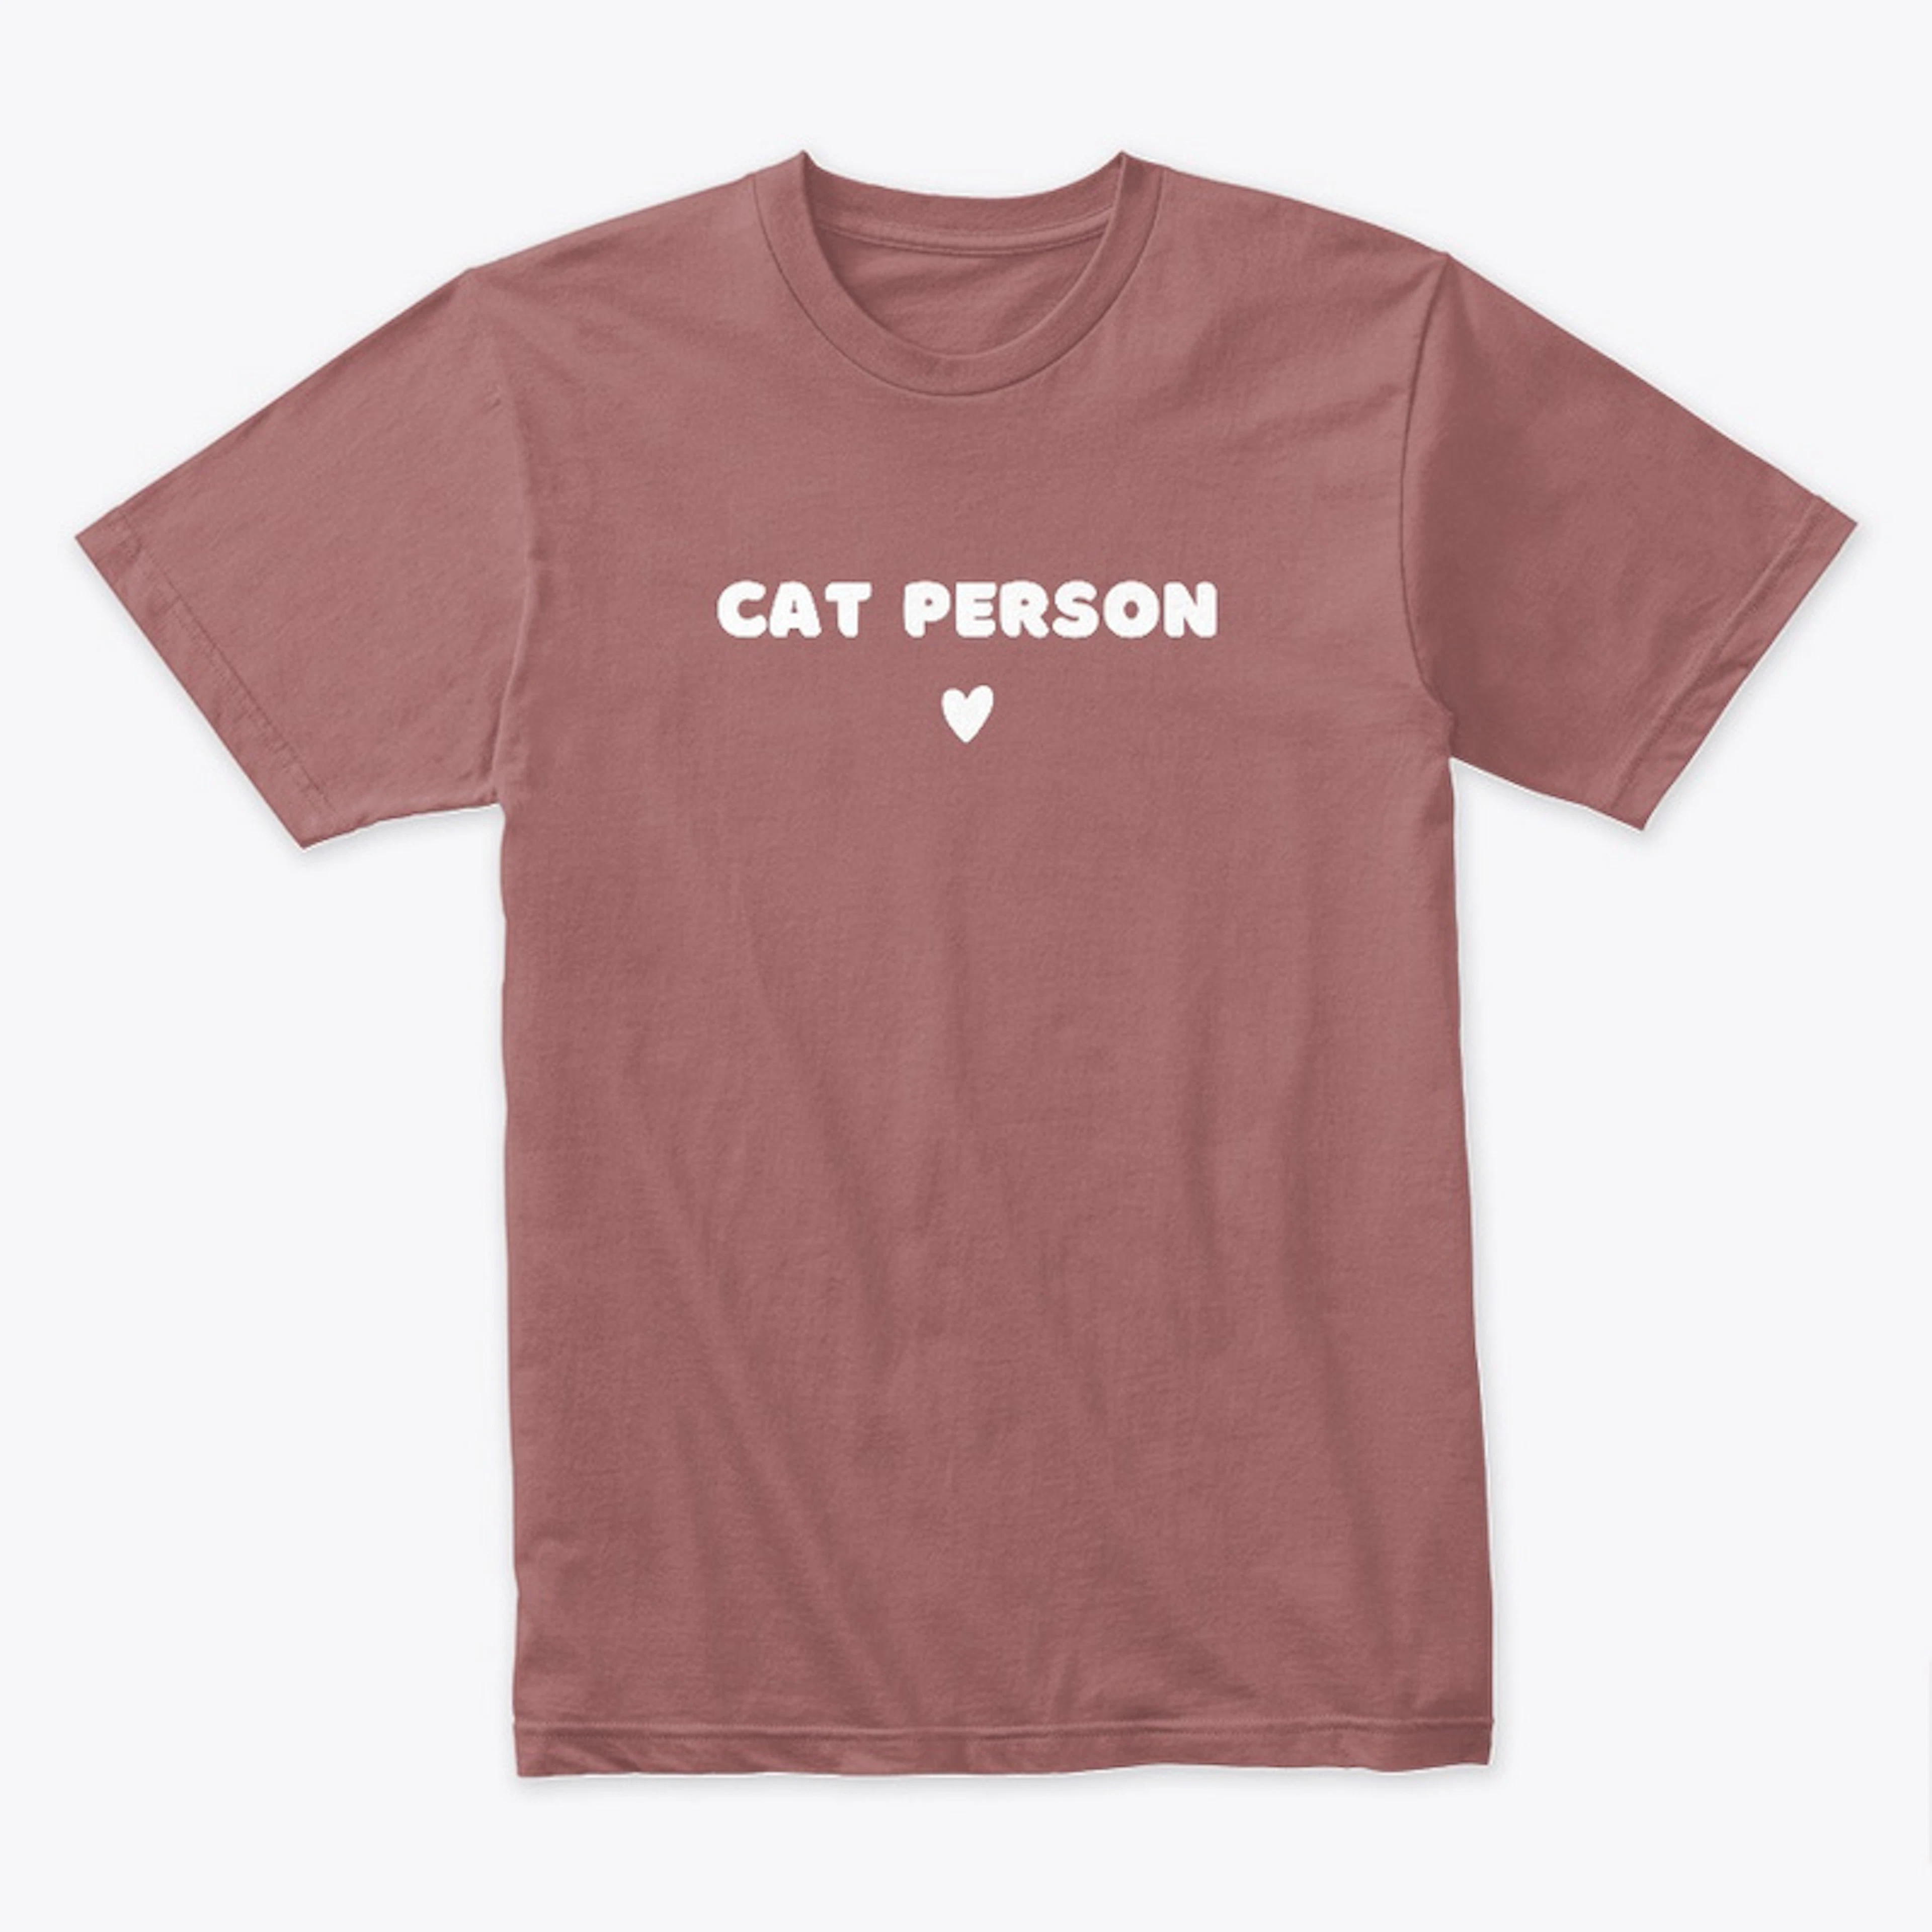 Cat Person Premium Tee